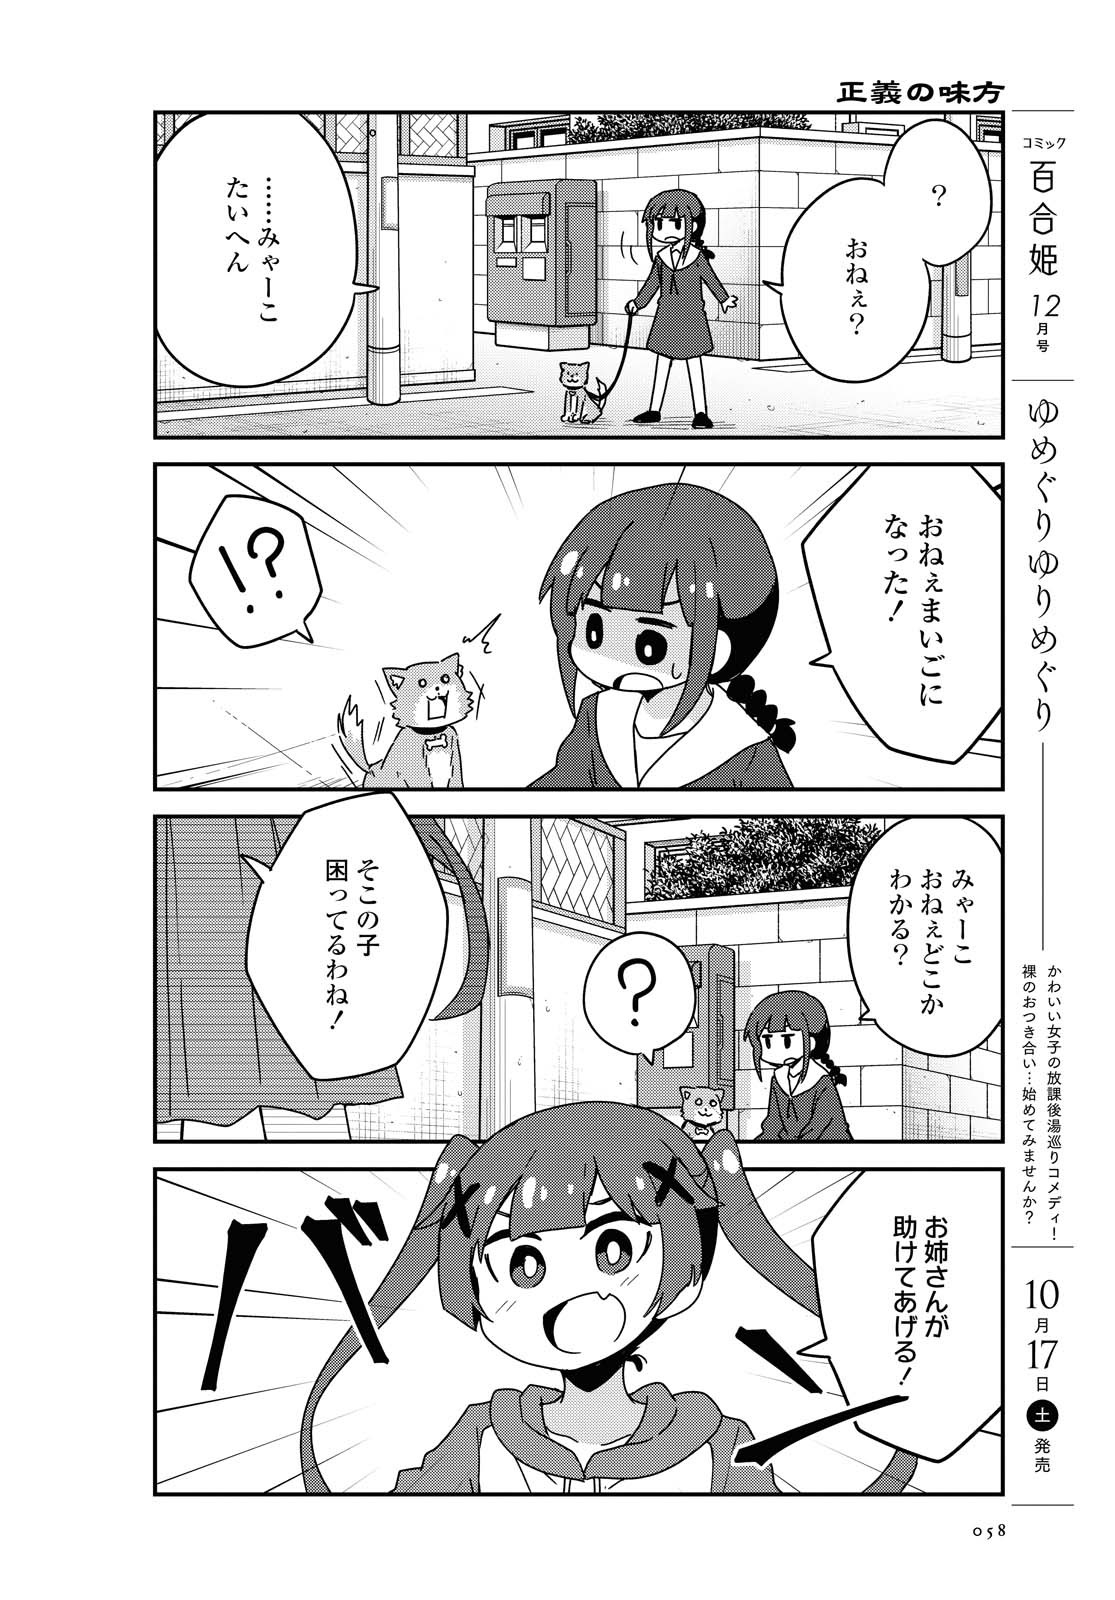 Watashi ni Tenshi ga Maiorita! - Chapter 71 - Page 4